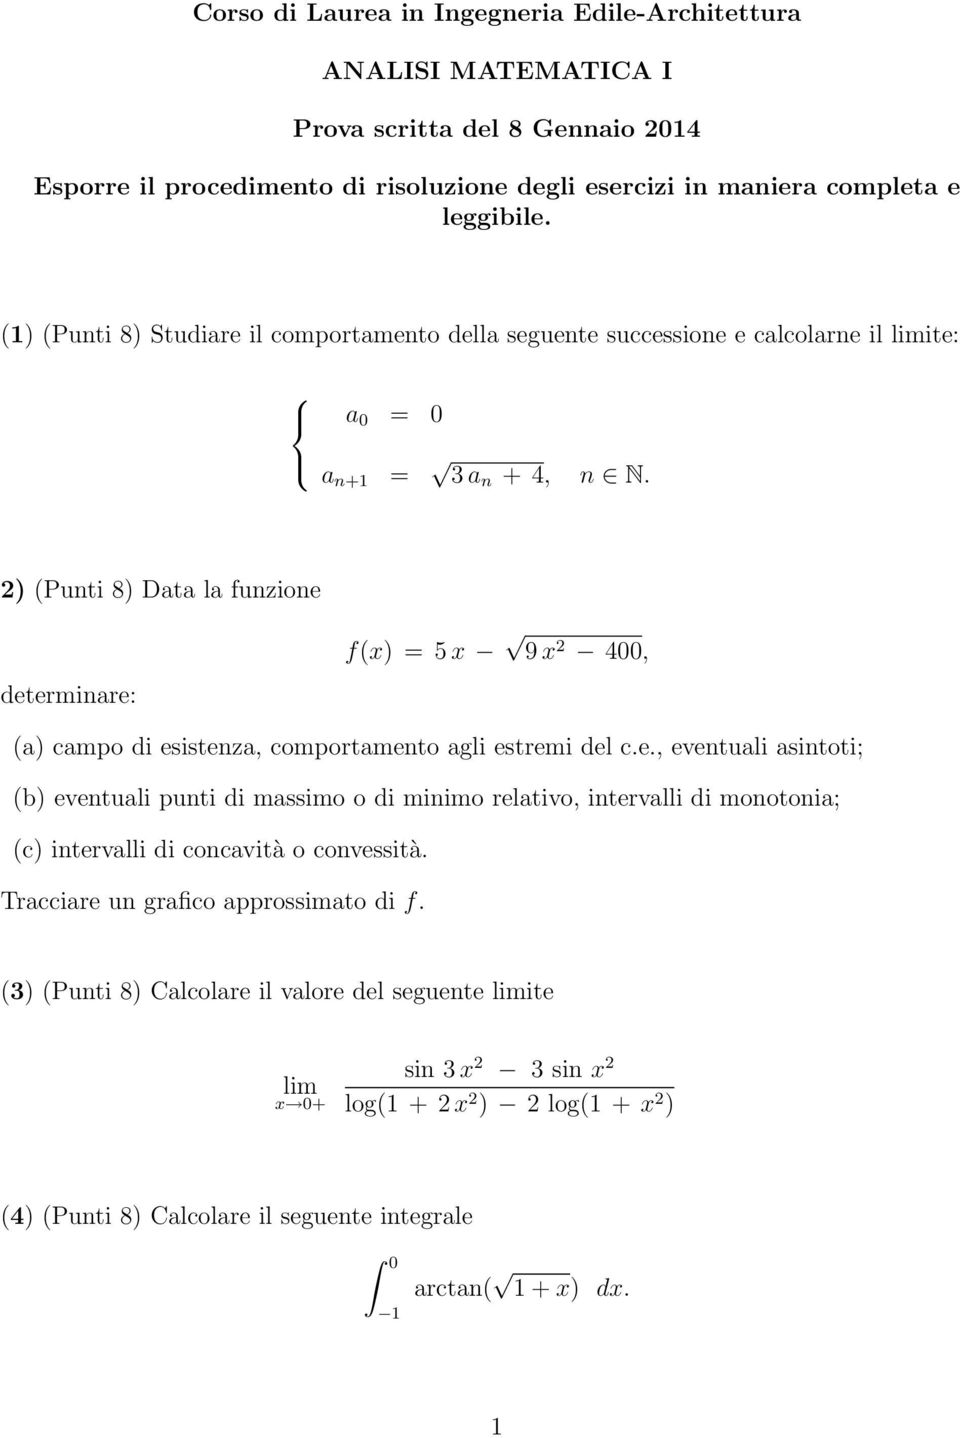 2) (Punti 8) Data la funzione f(x) = 5x 9x 2 4, determinare: (a) campo di esistenza, comportamento agli estremi del c.e., eventuali asintoti; (b) eventuali punti di massimo o di minimo relativo, intervalli di monotonia; (c) intervalli di concavità o convessità.